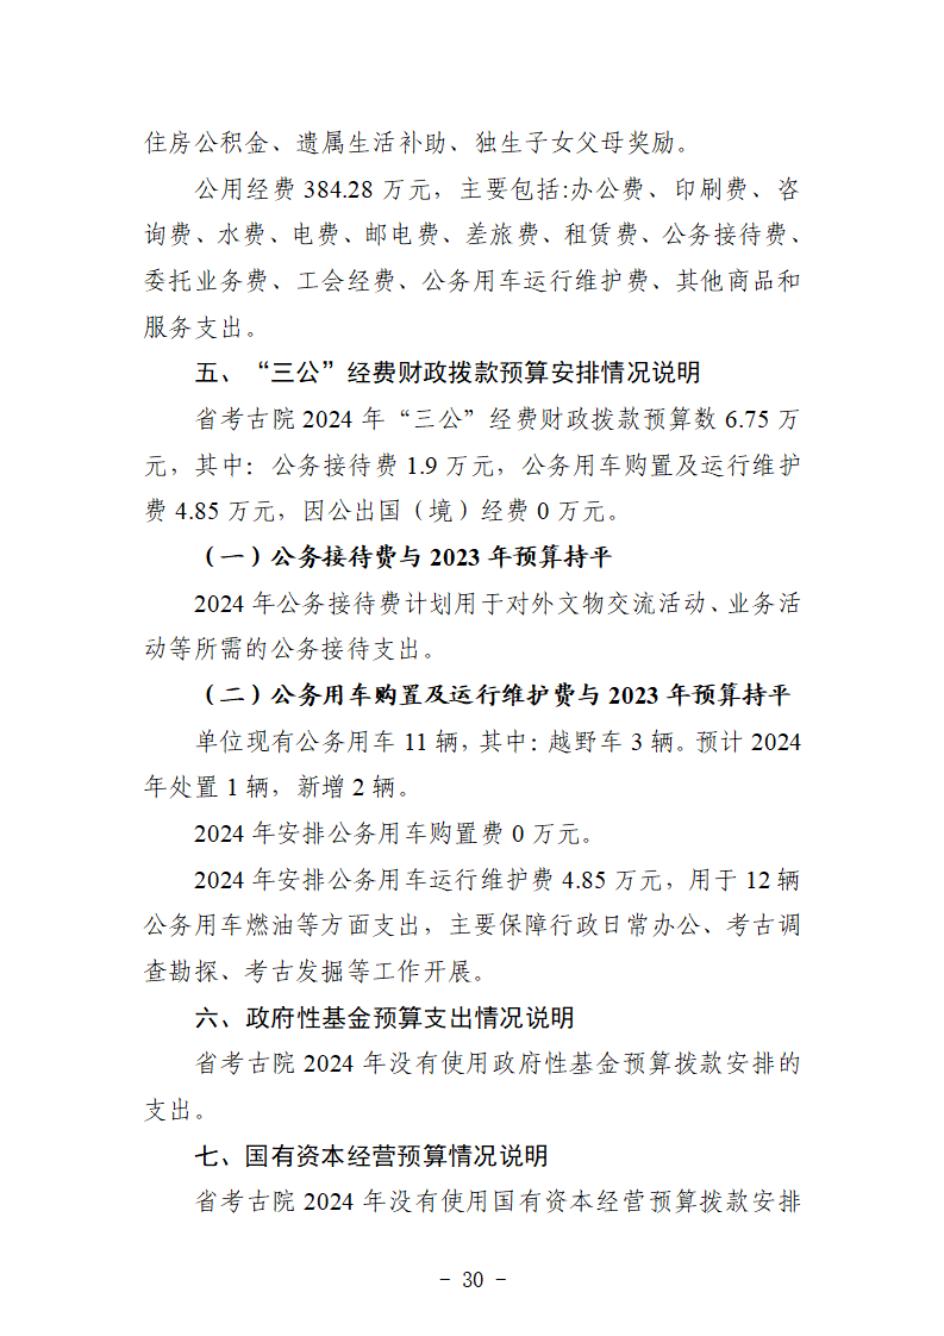 省考古院2024年四川省省级单位预算公开模板(3.14)_31.jpg